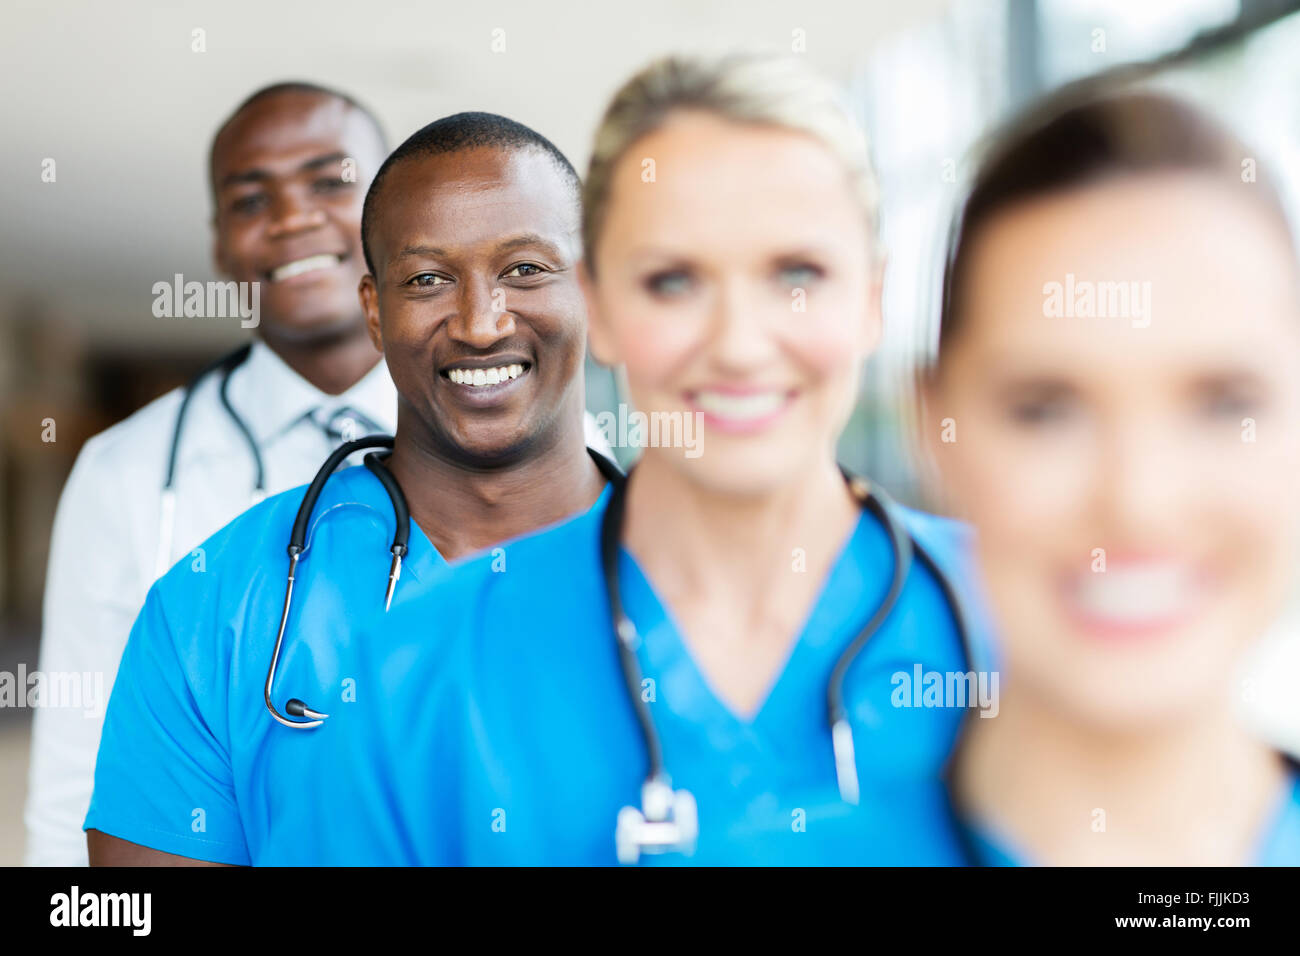 Groupe des travailleurs de la santé moderne multiraciale dans une rangée Banque D'Images